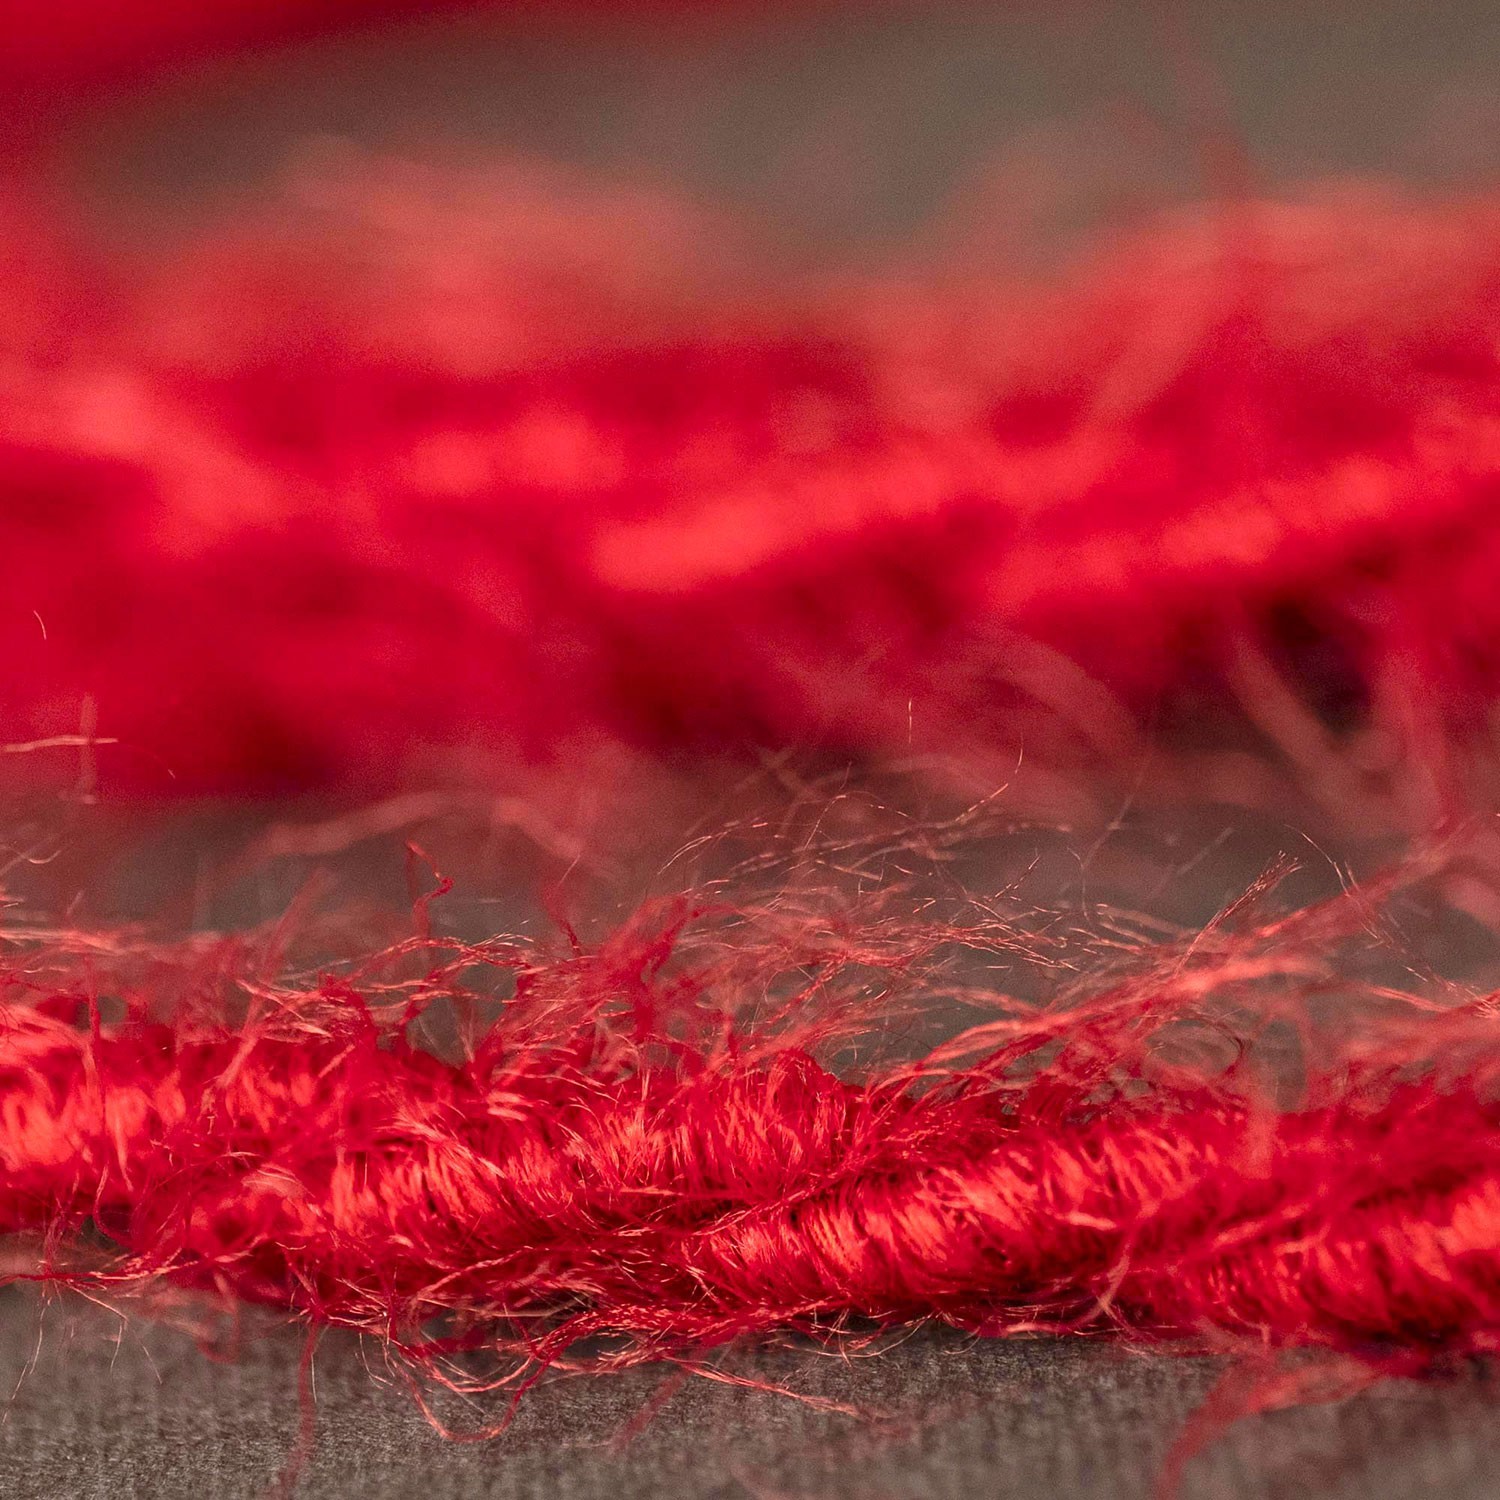 Burlesque flätad elektrisk kabel med täckt med pälsliknande tyg Röd enfärgad TP09